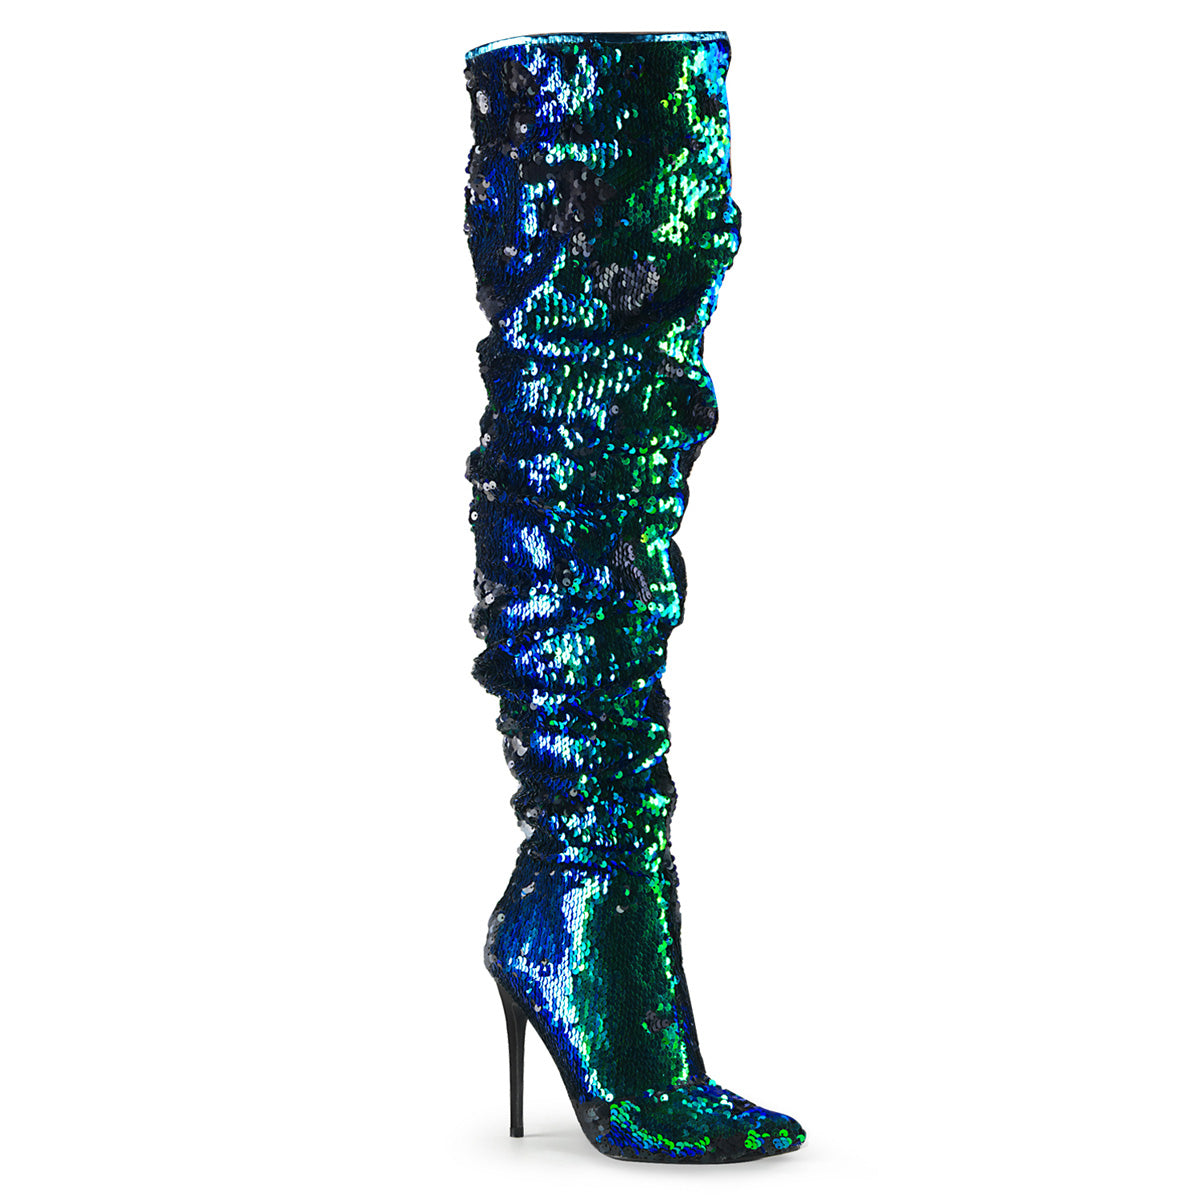 Pleaser Stivali da donna COURTLY-3011 Paillettes iridescenti verdi